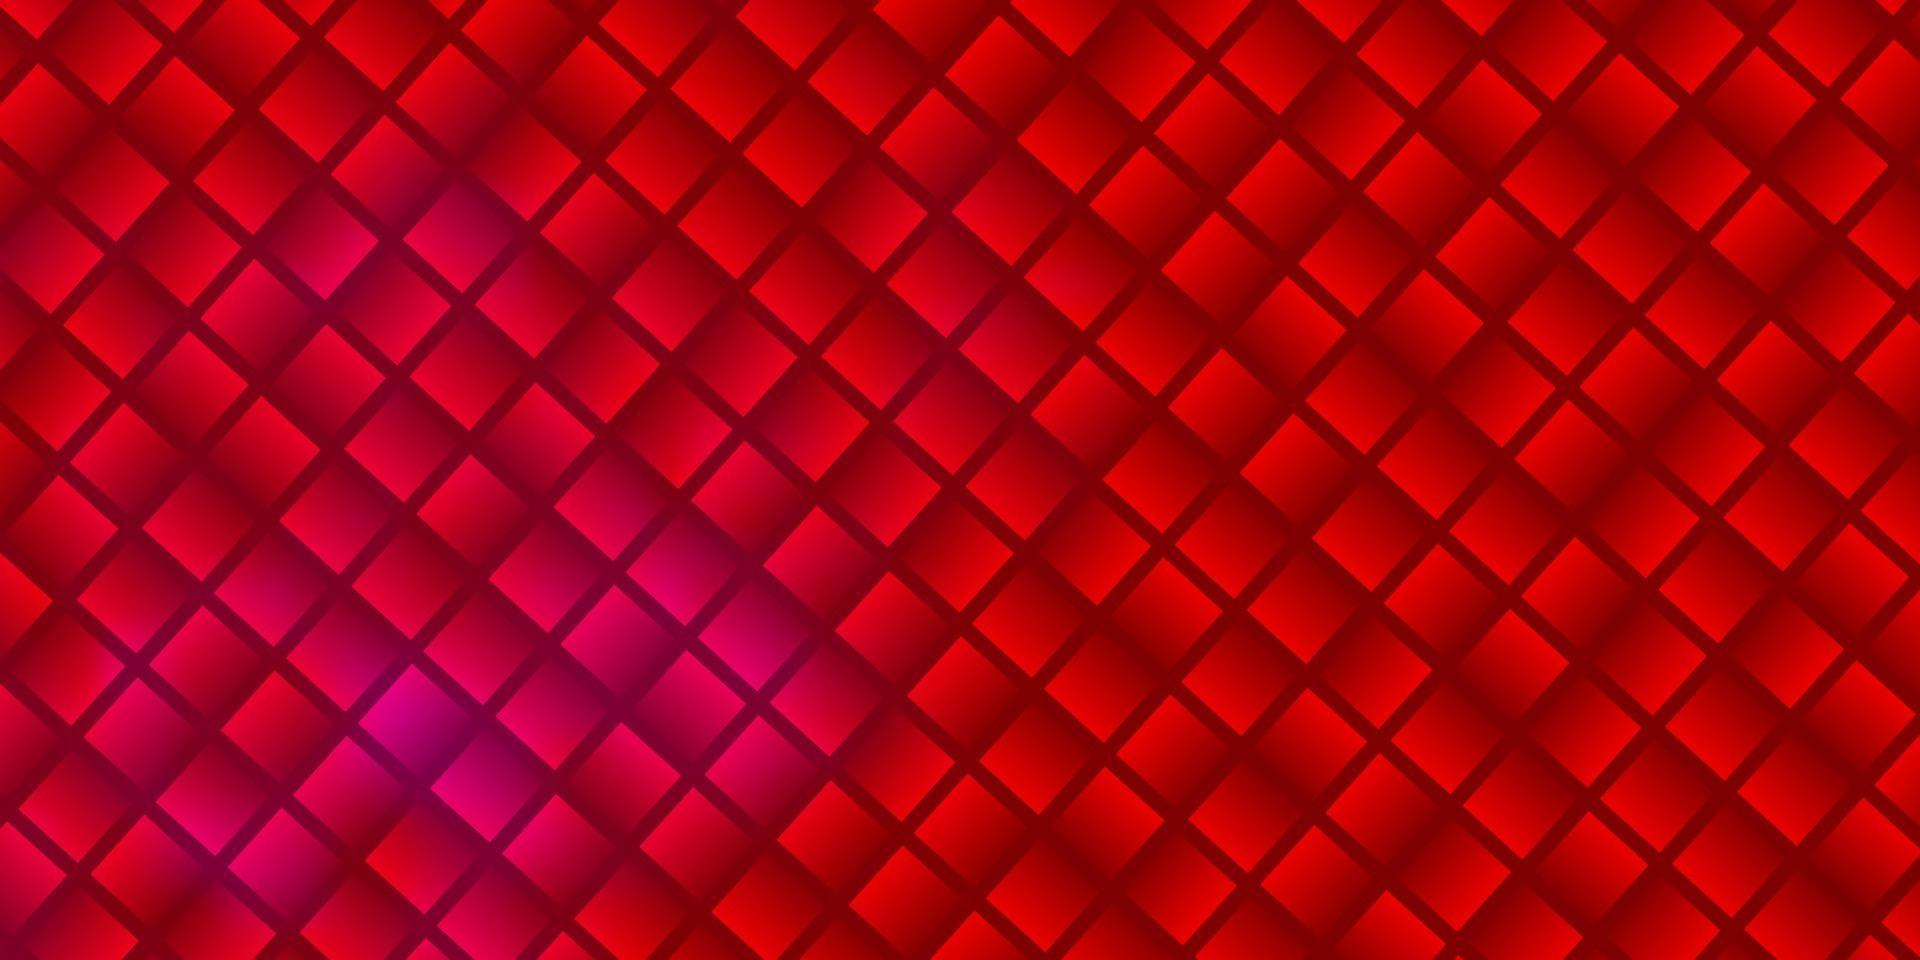 fundo vector rosa claro, vermelho em estilo poligonal.